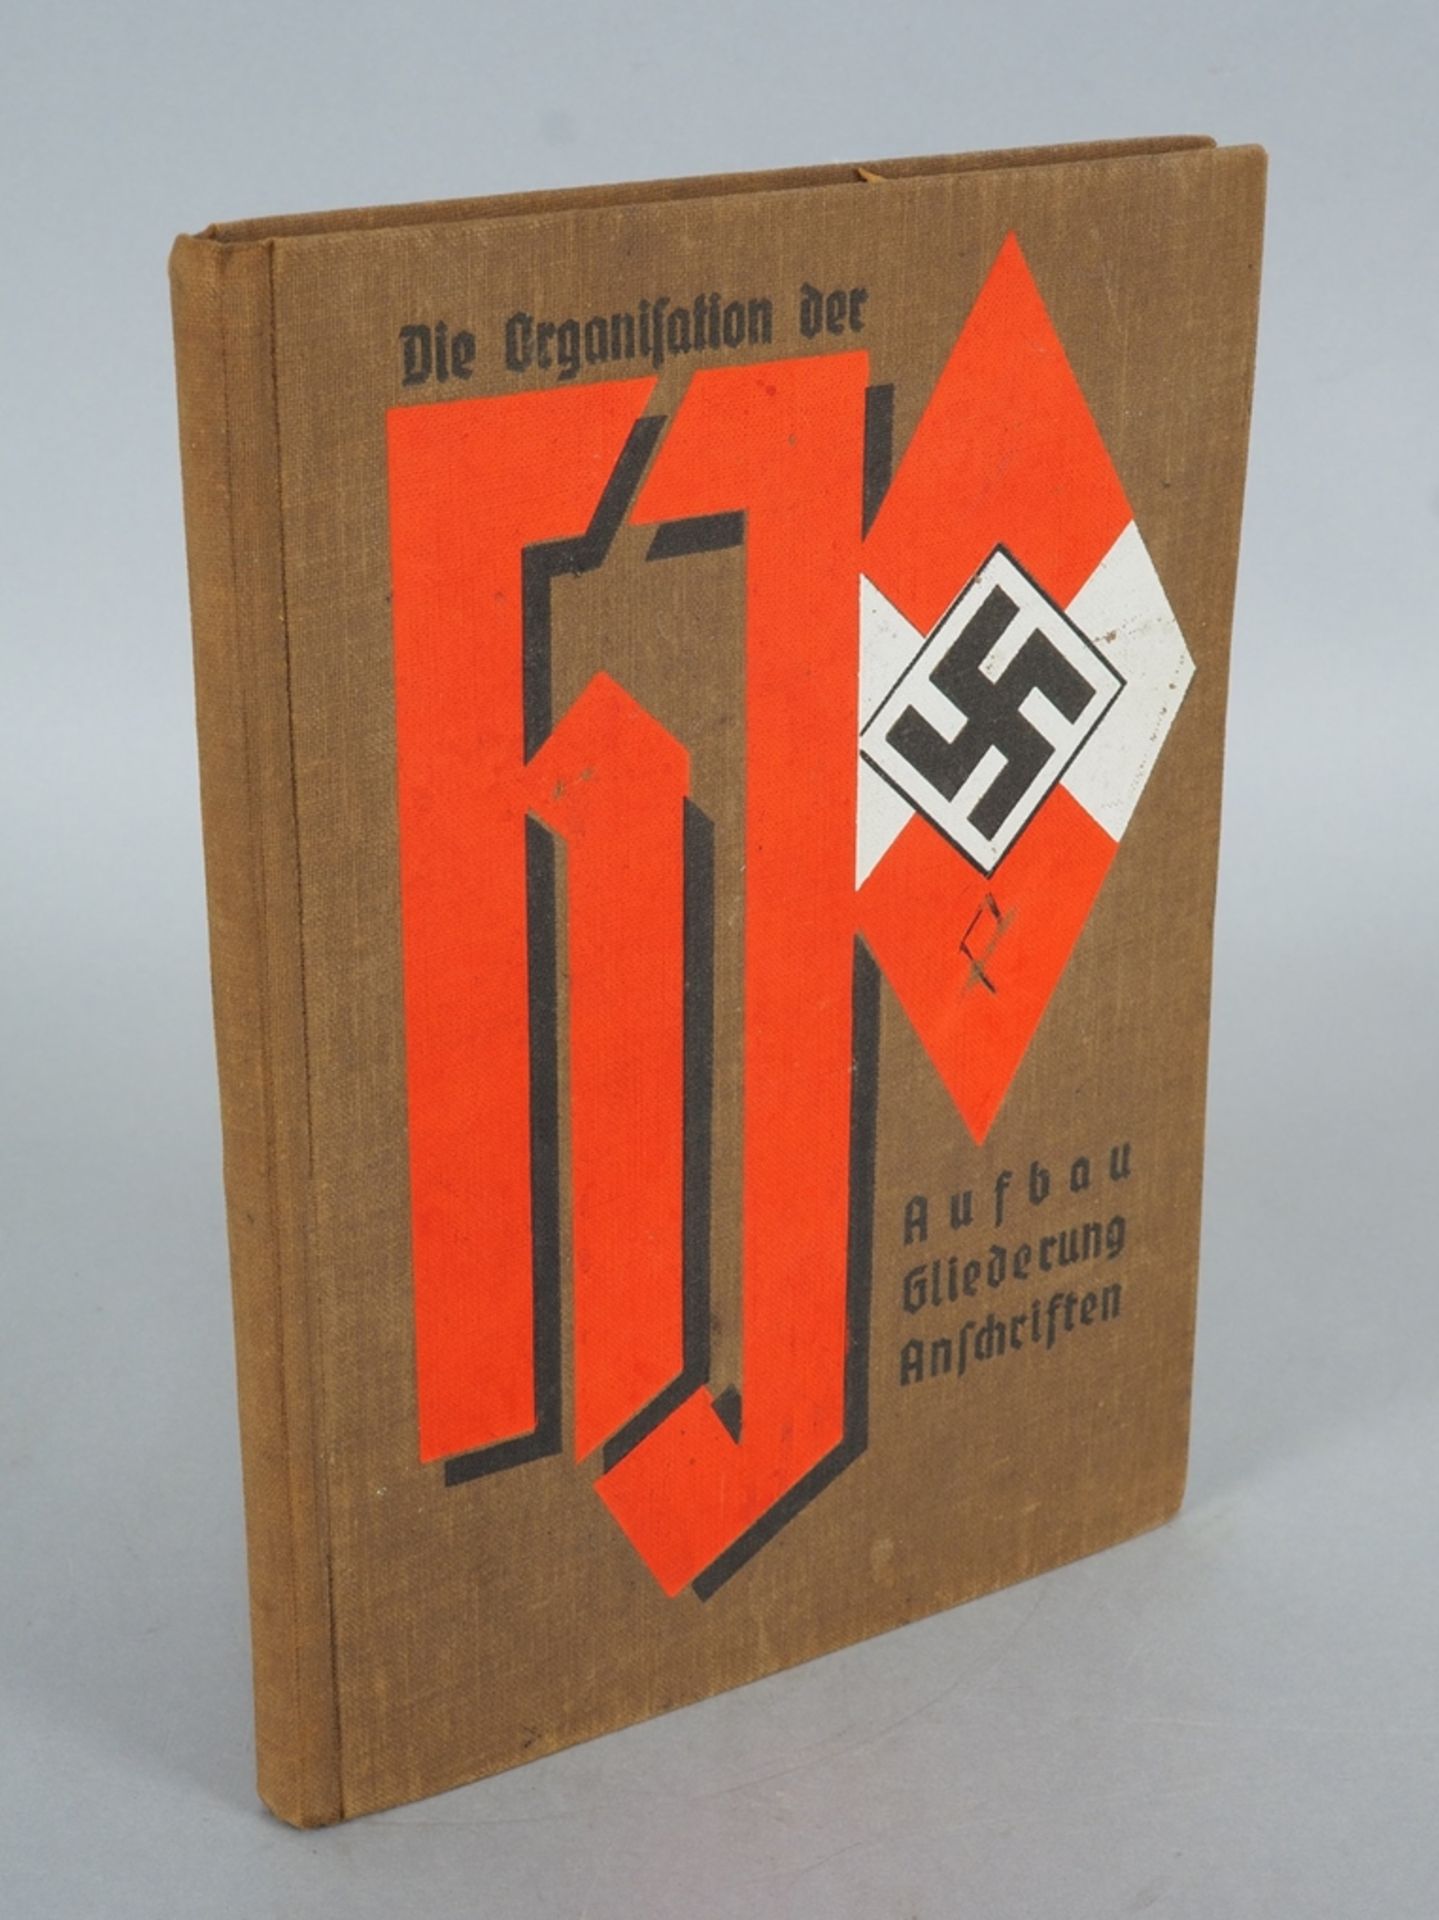 Seltenes Buch: Die Organisation der Hitler-Jugend, Aufbau Gliederung Anschriften 1937